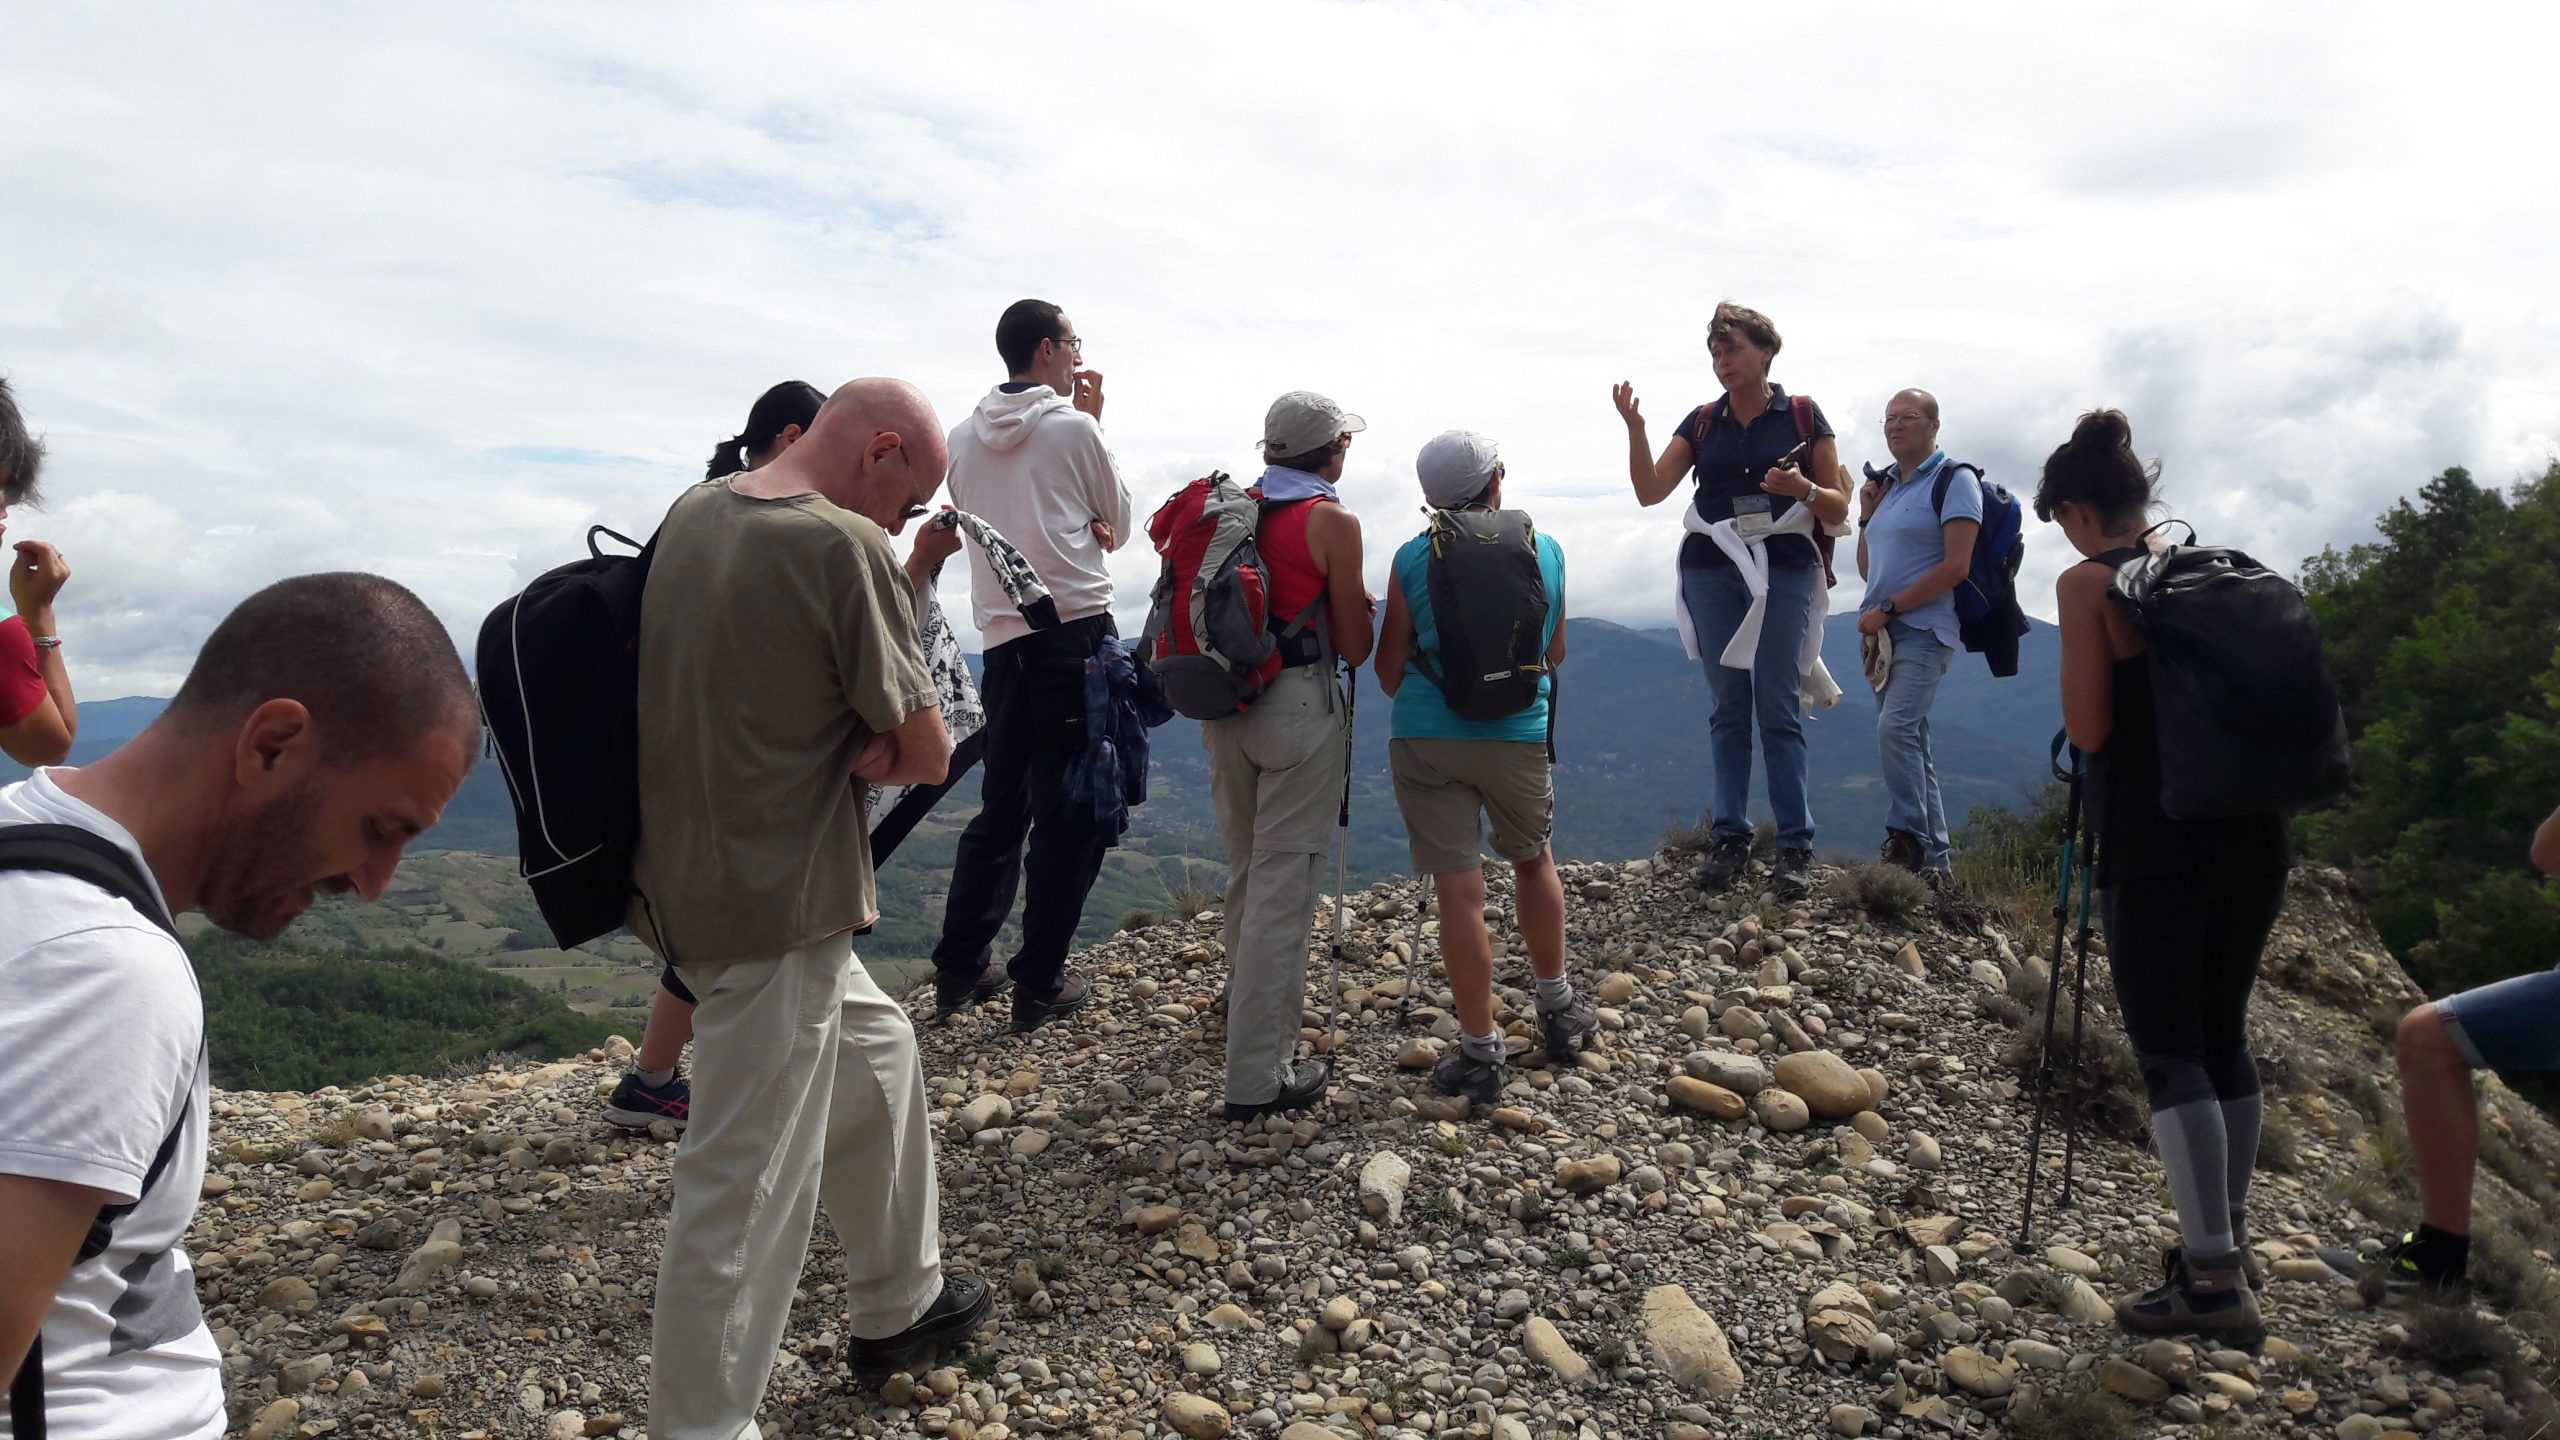 A Dernice sabato 27 agosto “Timo Selvatico”, un trekking naturalistico in Val Borbera